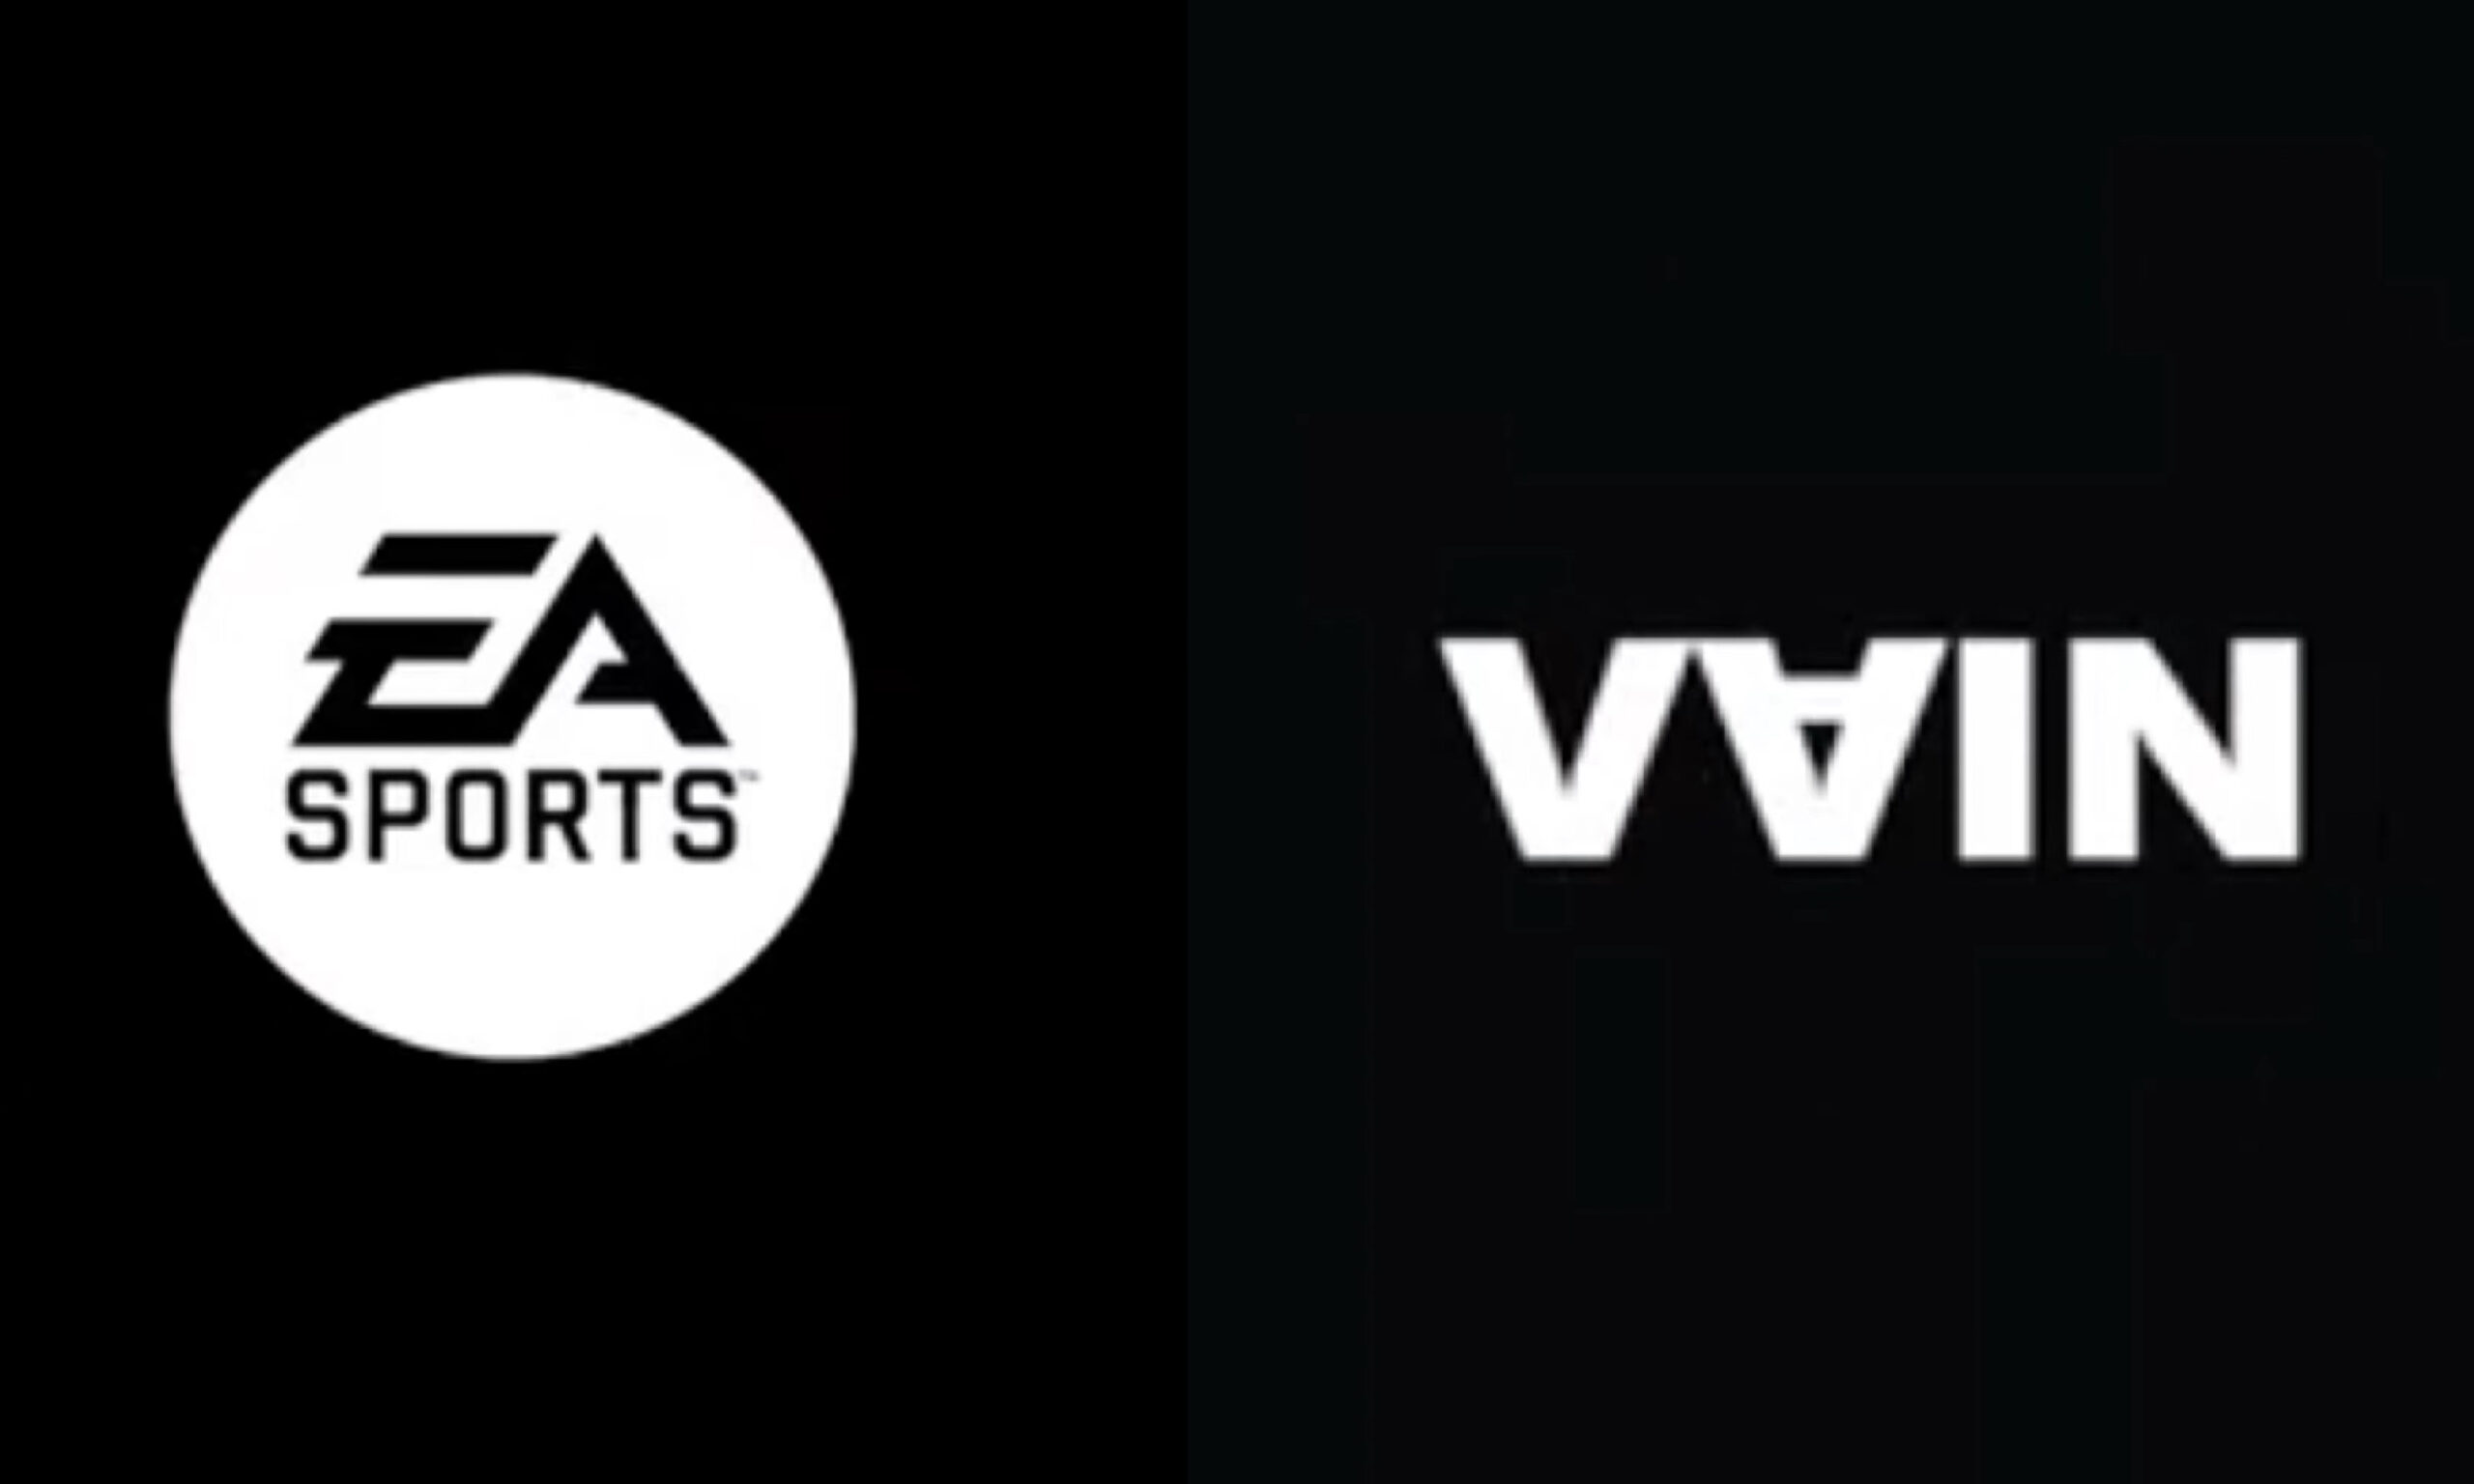 体育游戏联动，VAIN 携手 EA SPORTS 打造合作系列